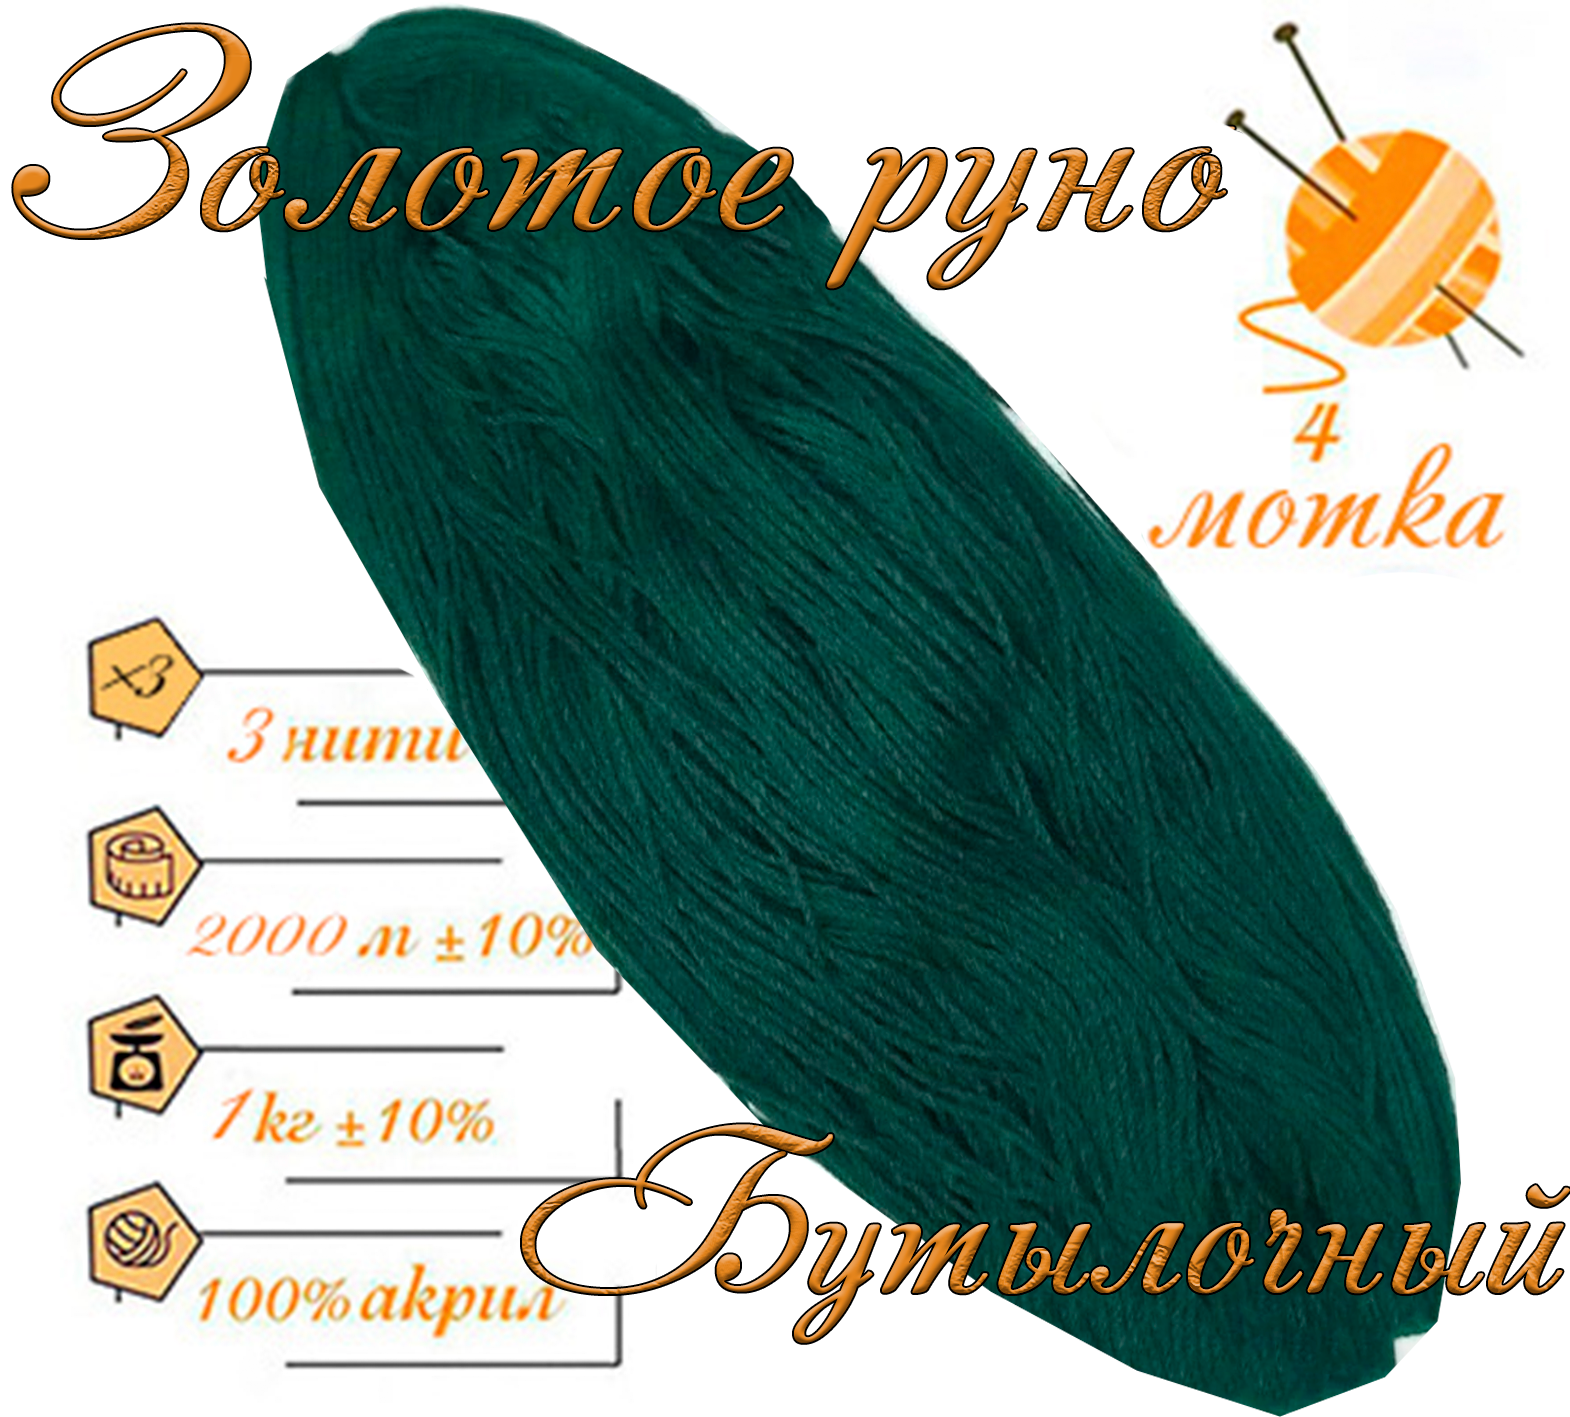 Нитки для ручного вязания (4 шт. 1кг/2000 м), пряжа трёхниточная в пасмах (250-300 гр/шт.) 100% акрил (Бутылочный)